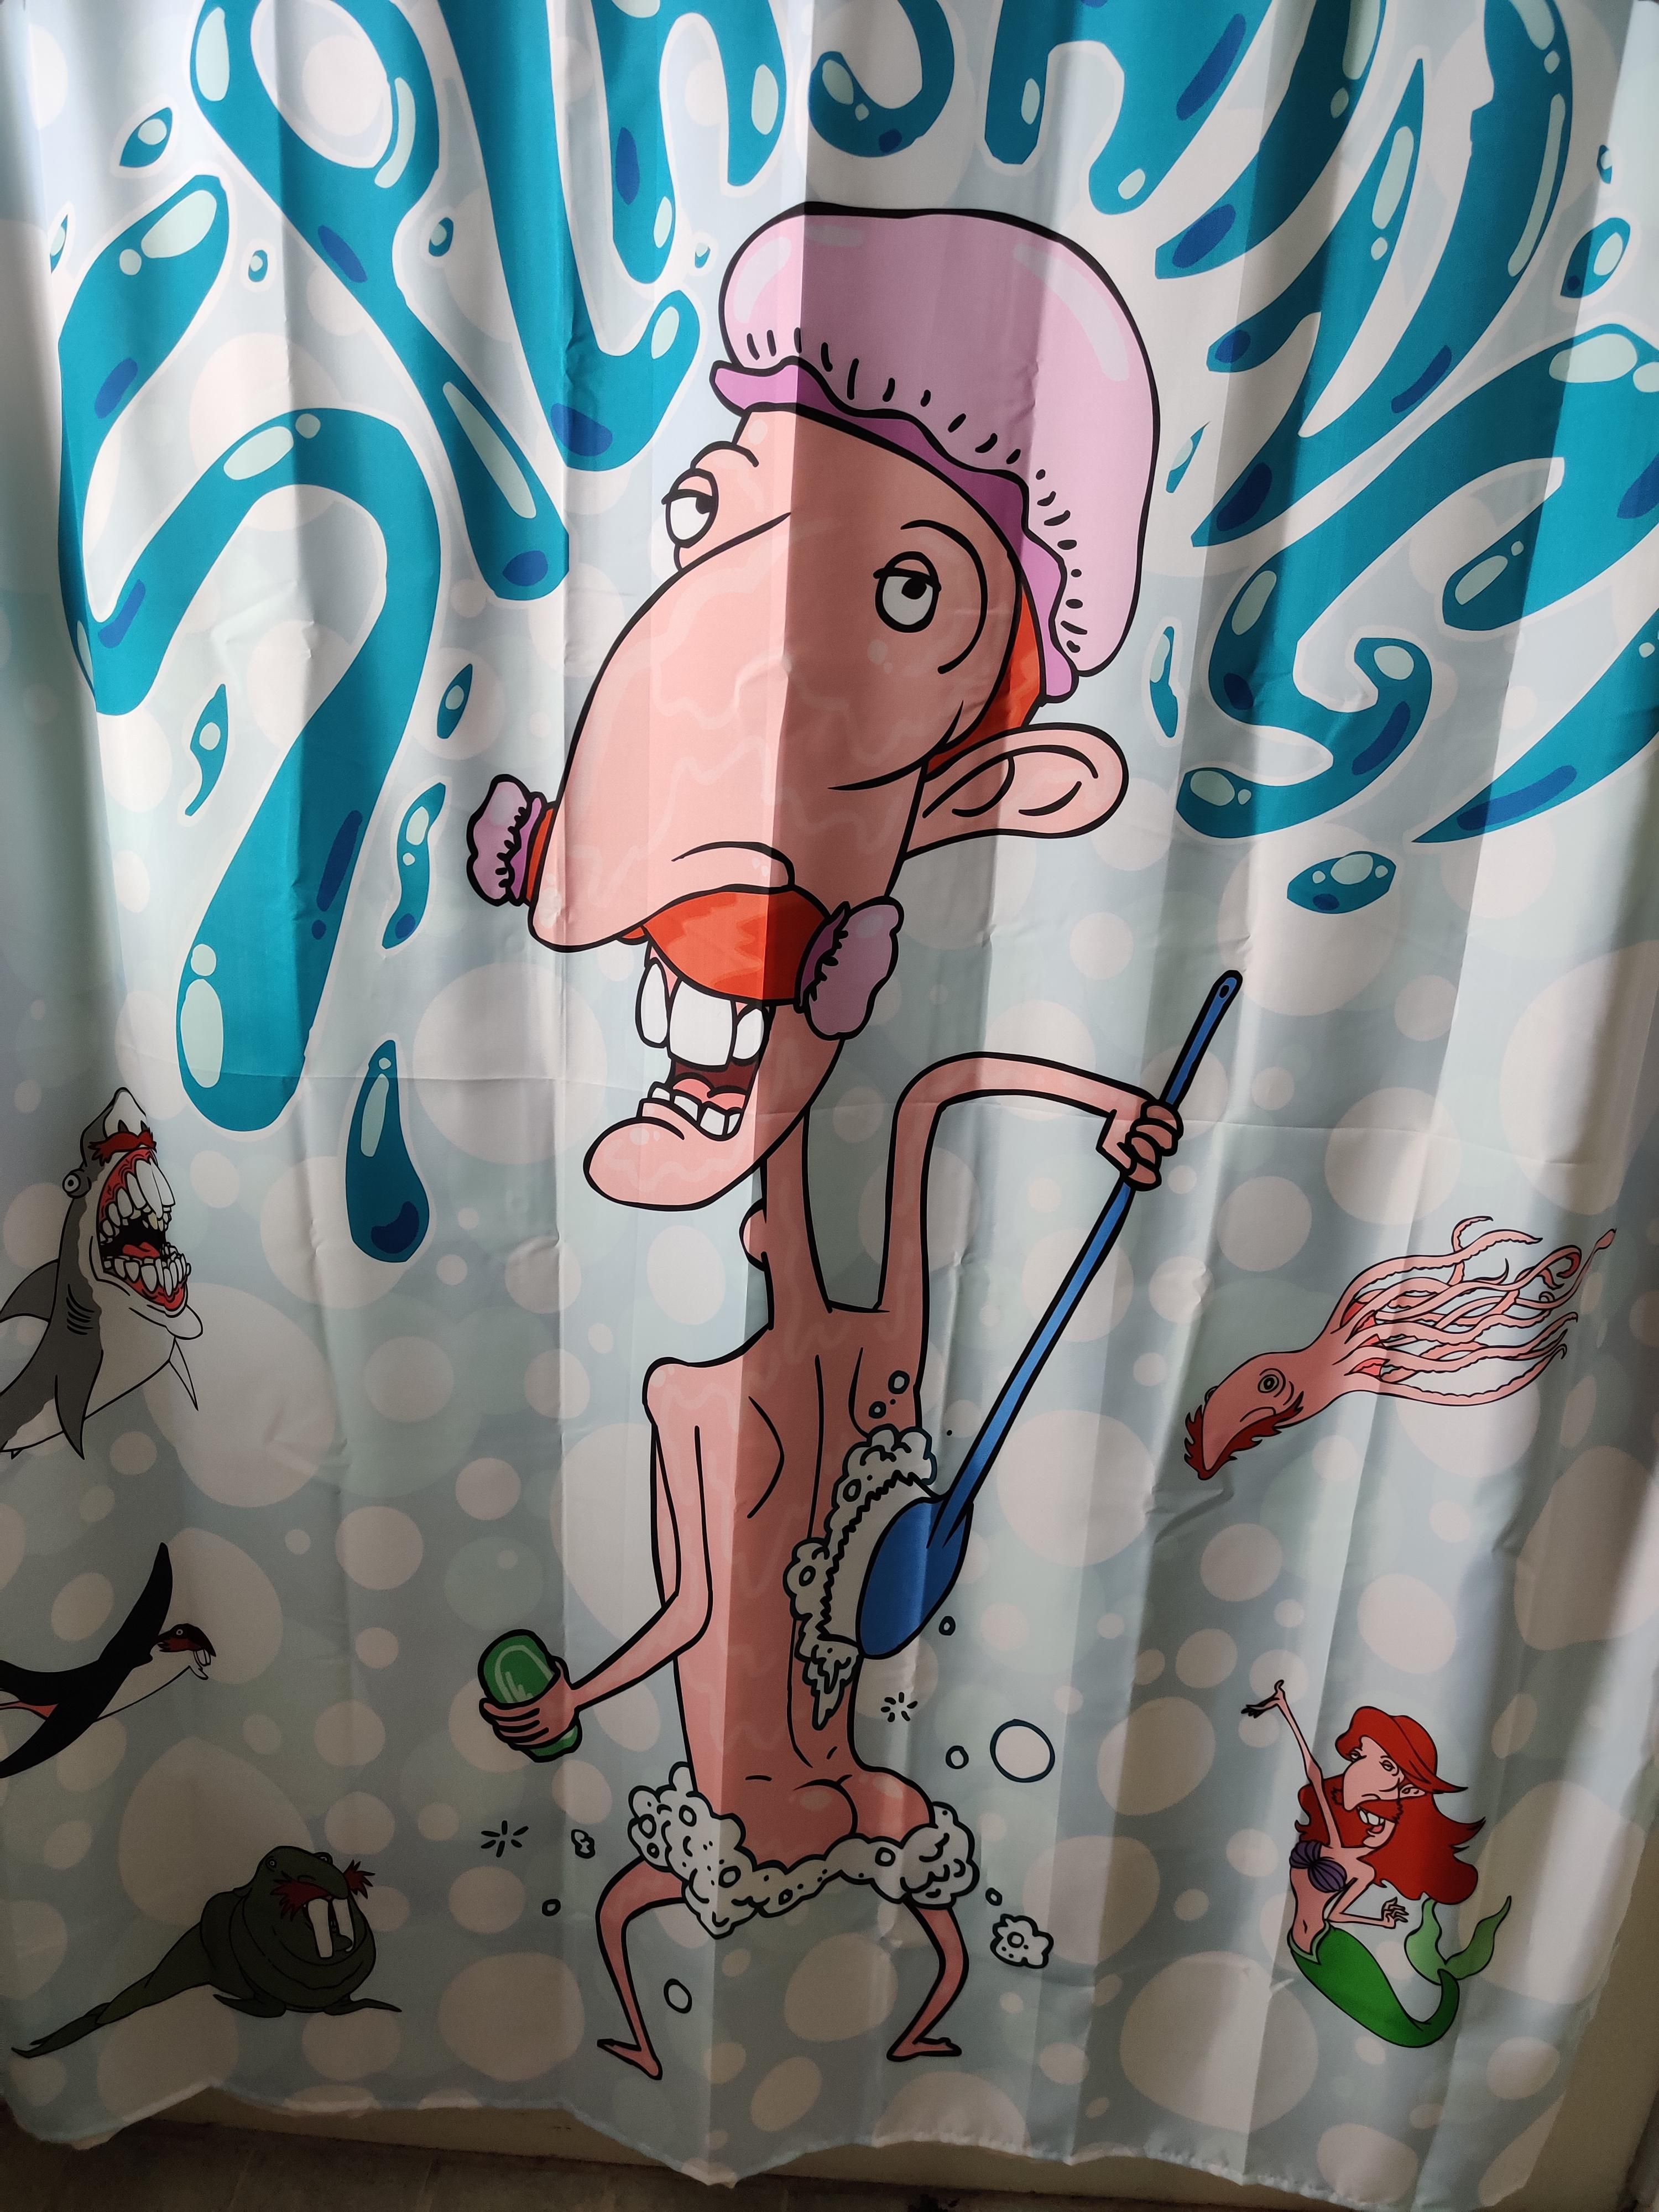 My friend's interesting taste in shower curtains.